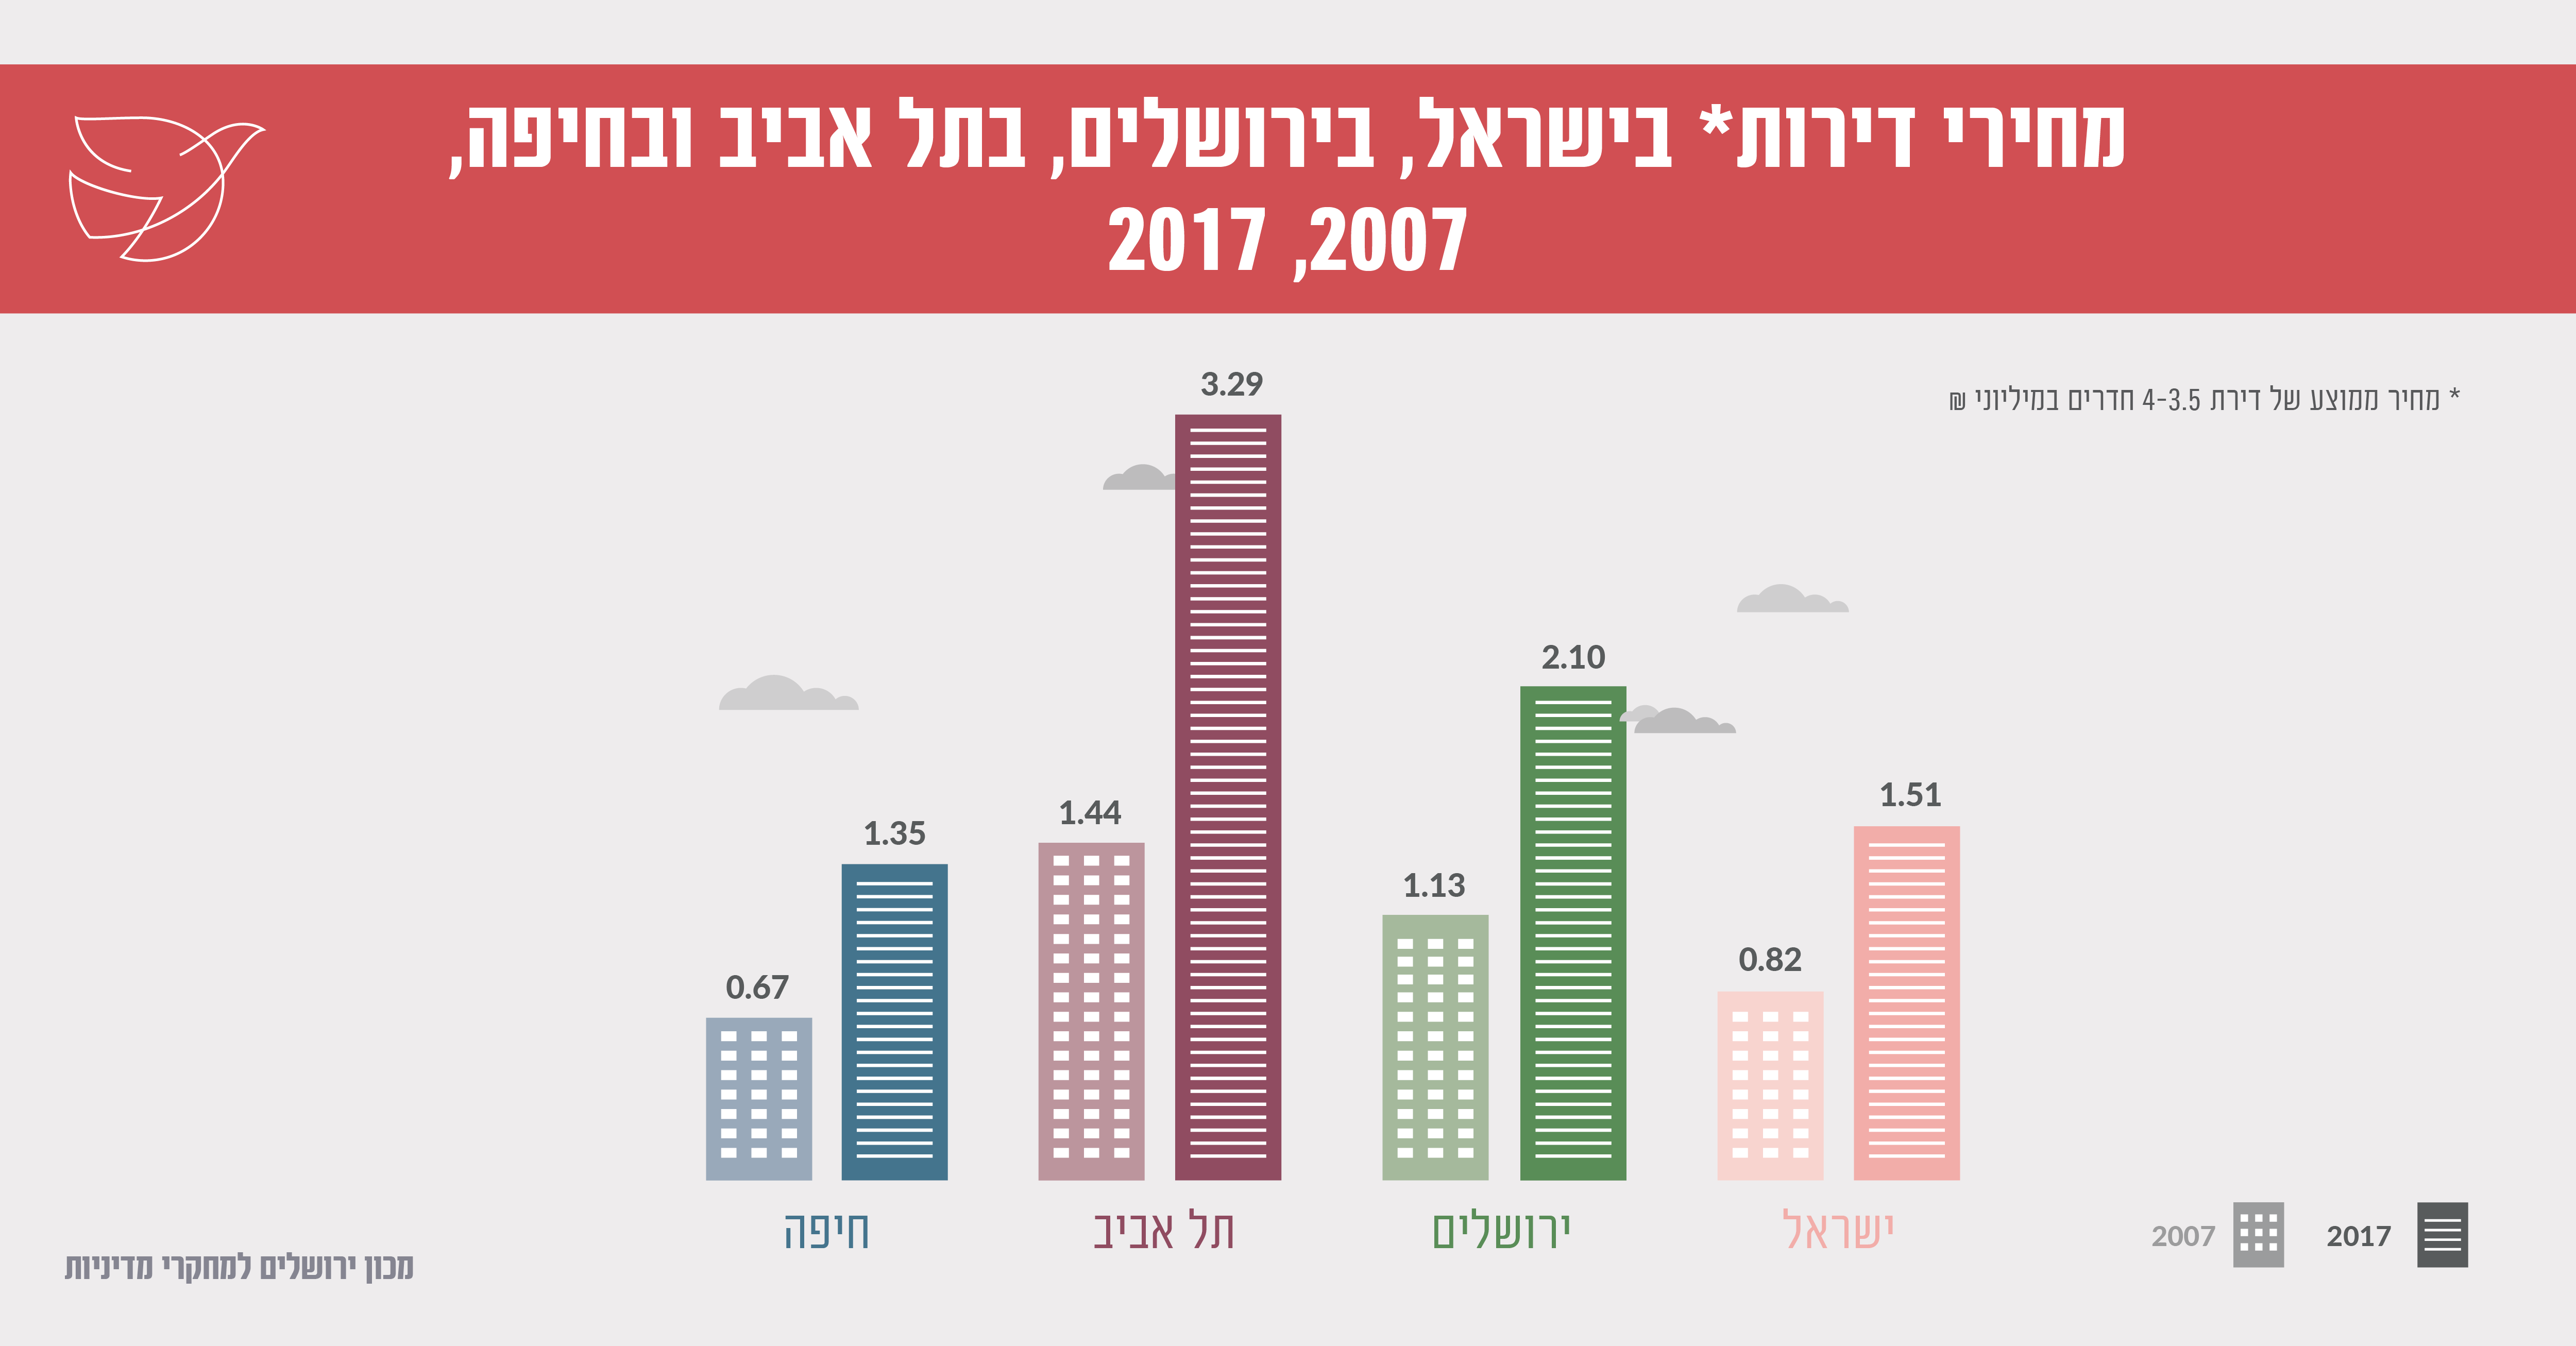 מחירי דירות בישראל, בירושלים, בתל אביב ובחיפה 2007, 2017